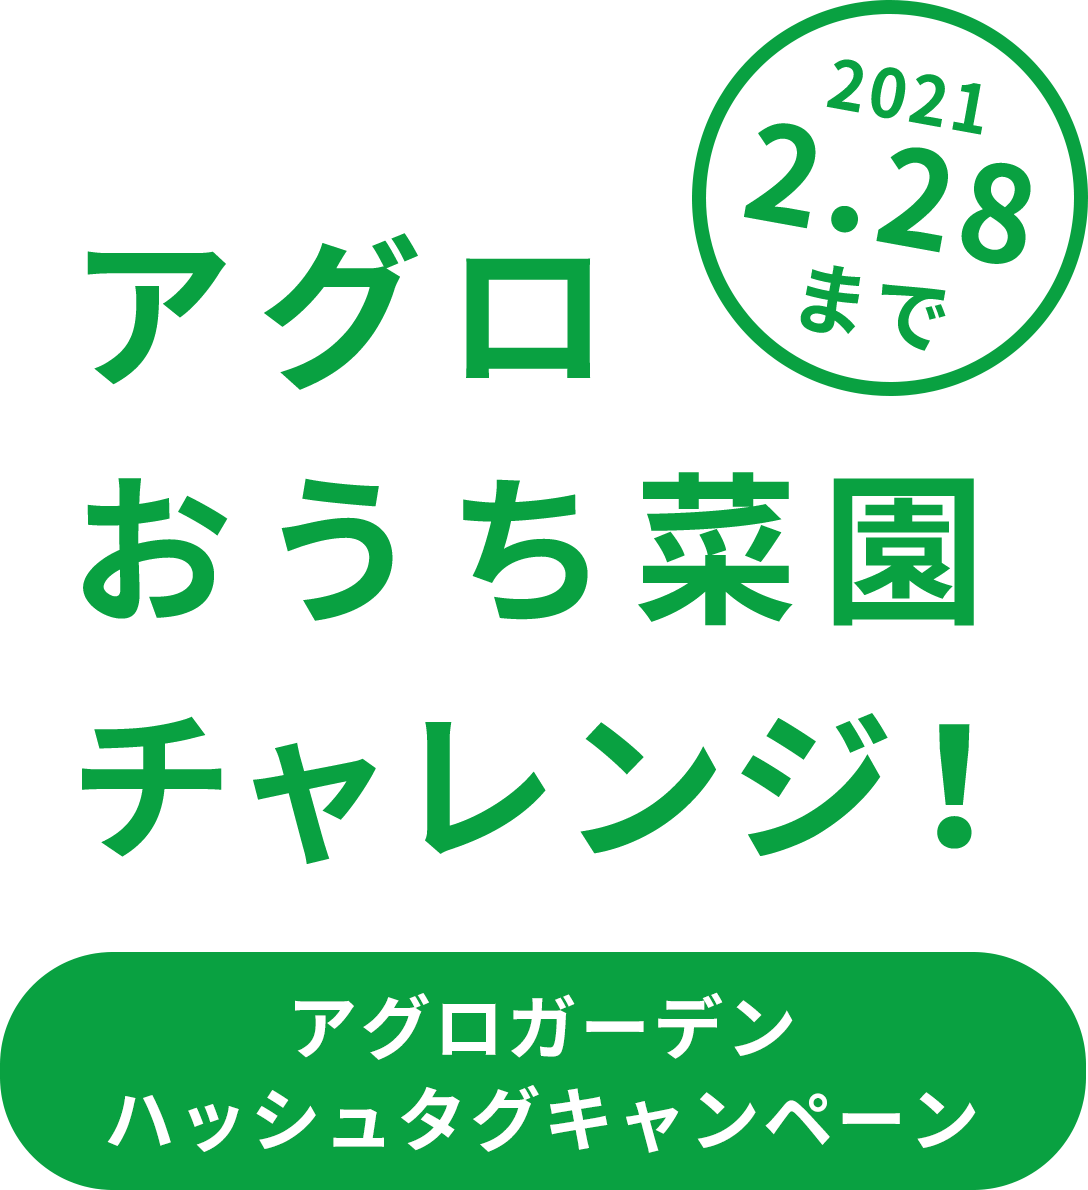 アグロおうち菜園チャレンジ! #アグロガーデニング ハッシュタグキャンペーン